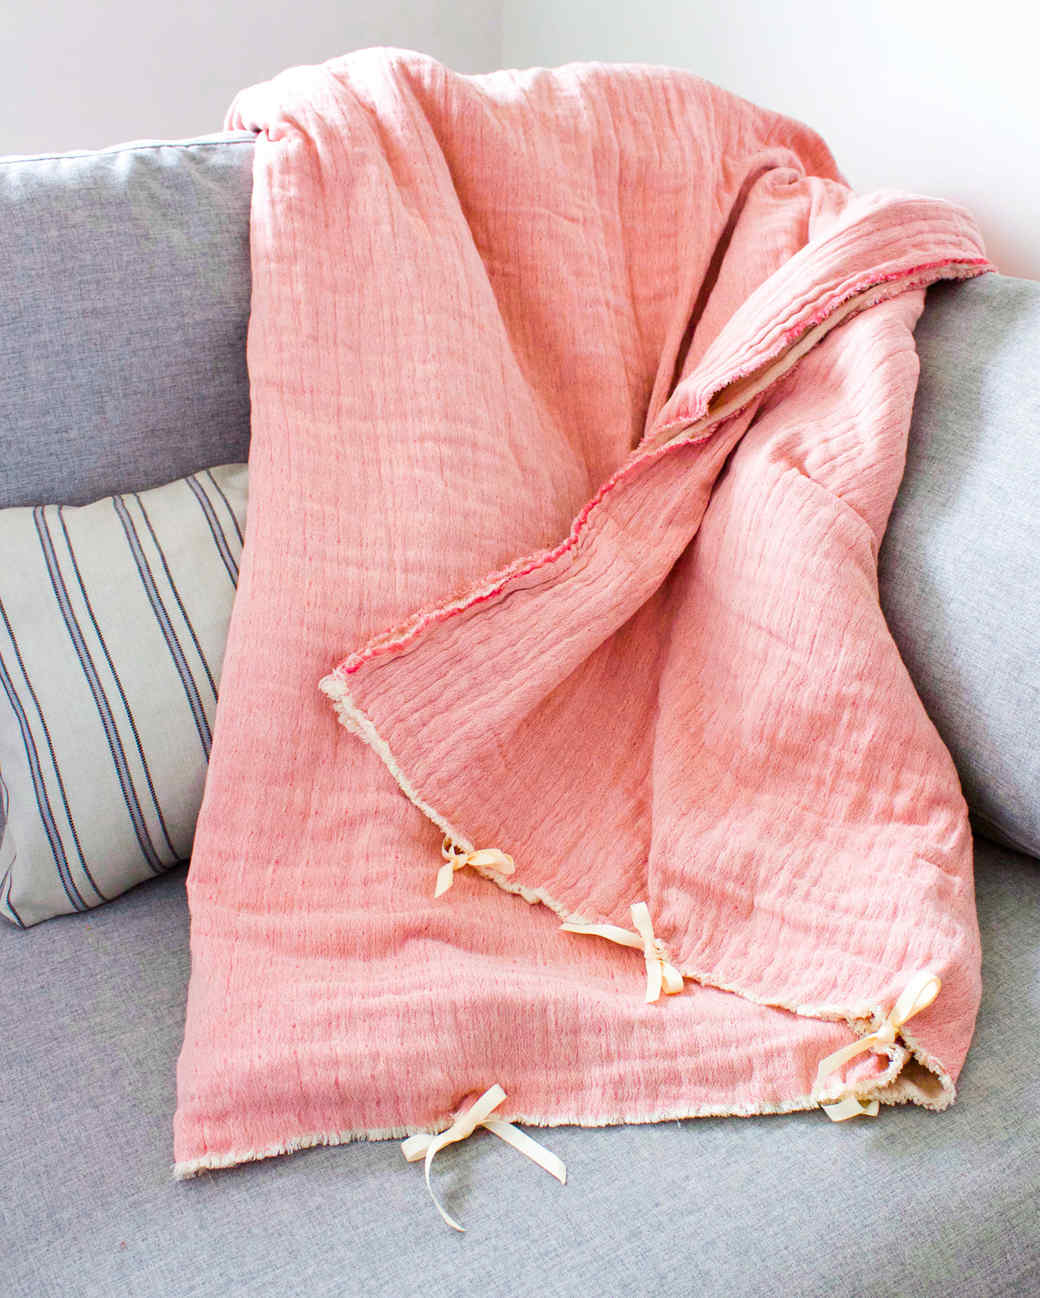 Weighted Blanket | Martha Stewart